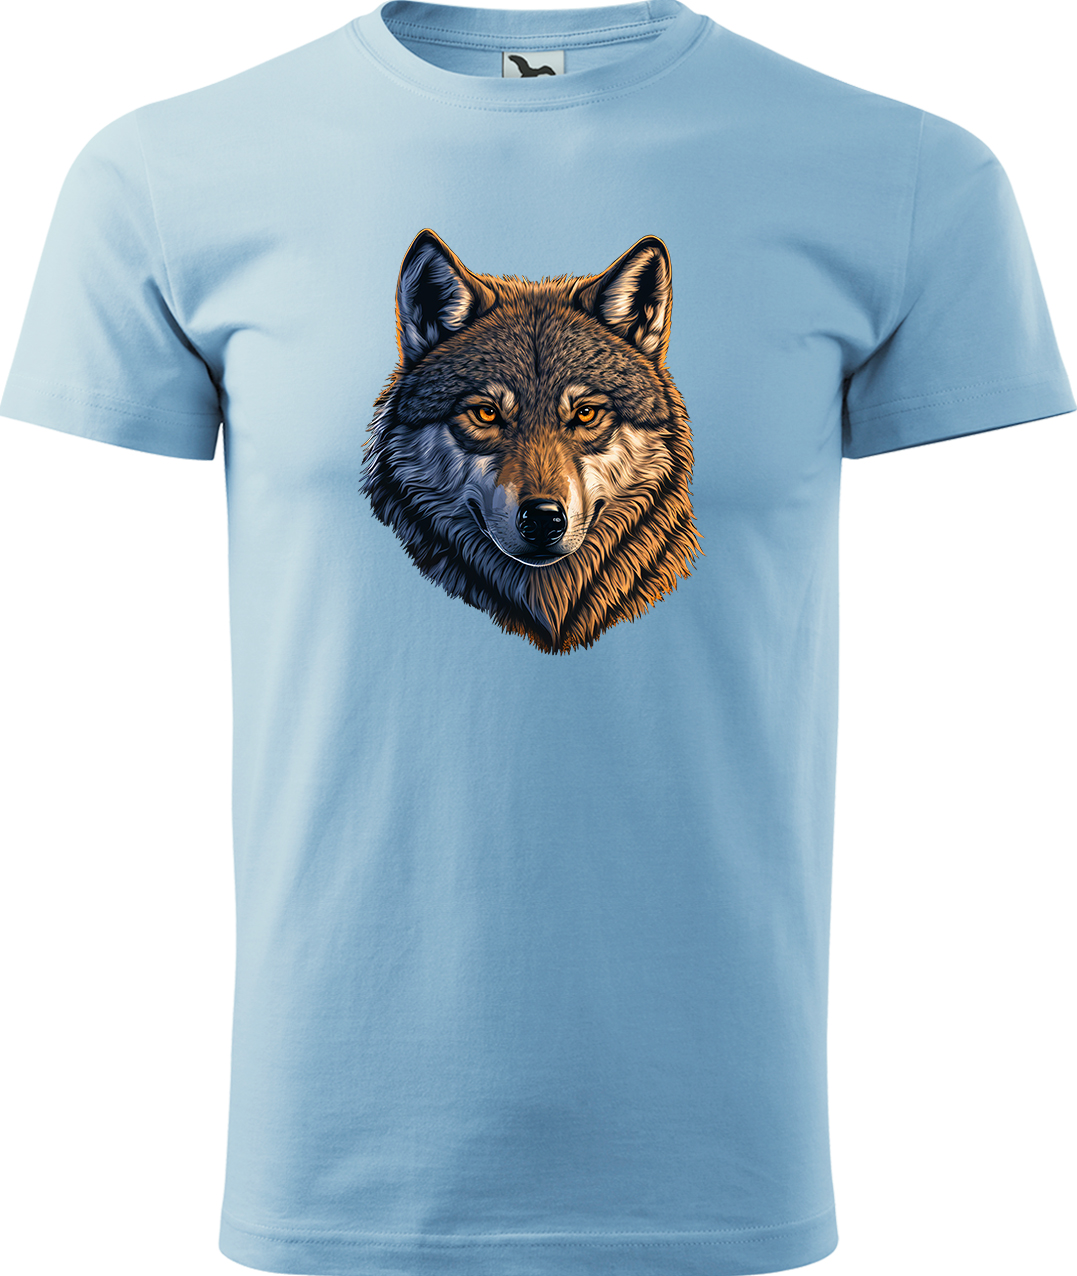 Pánské tričko s vlkem - Hlava vlka Velikost: 3XL, Barva: Nebesky modrá (15), Střih: pánský